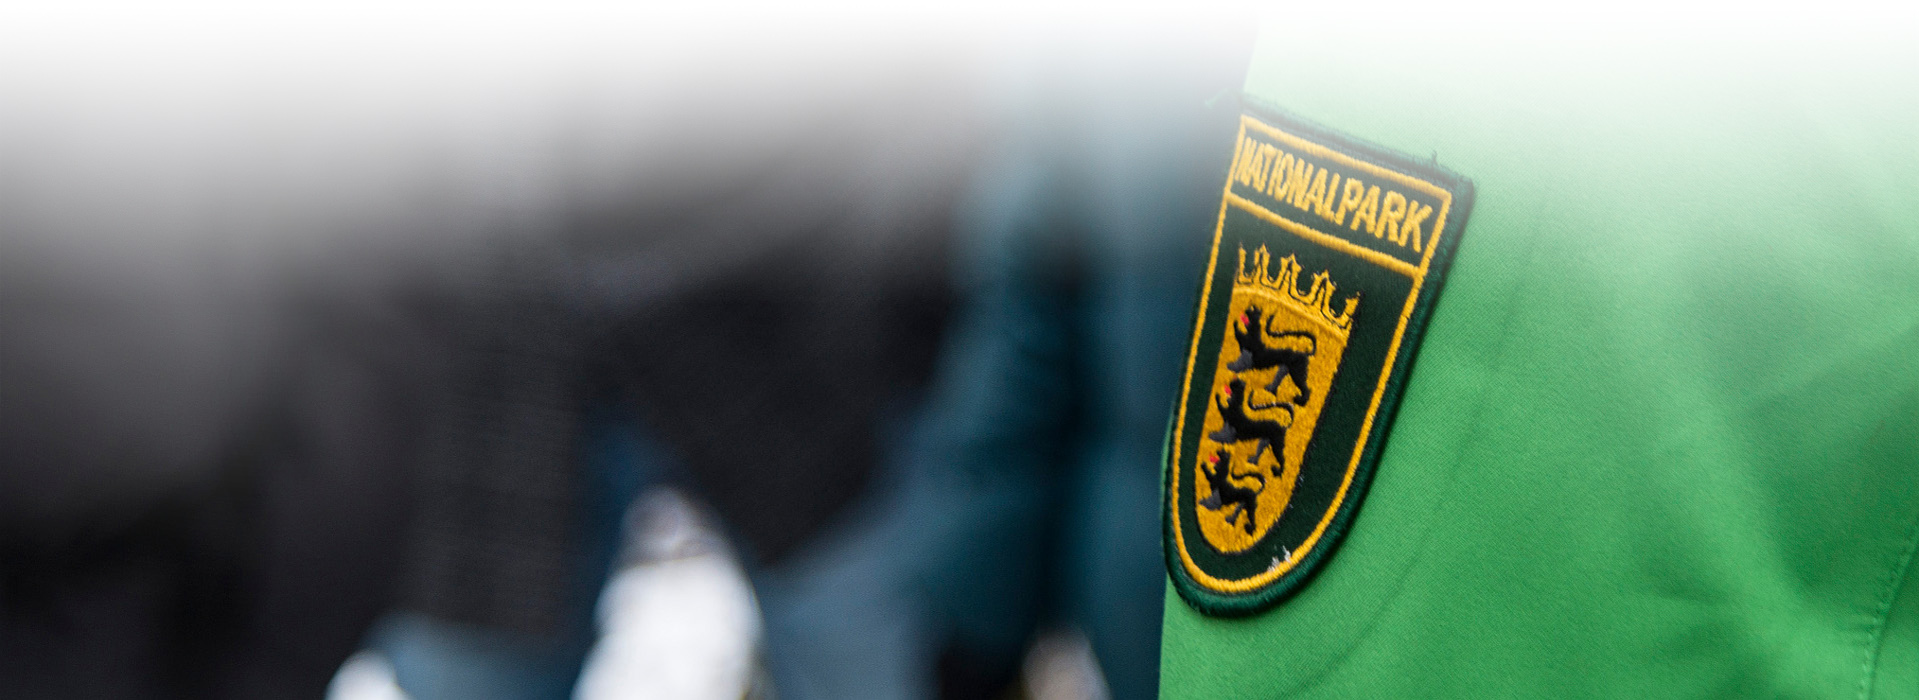 Aufnahme des Rangerabzeichens auf einem Jackenärmel. Es zeigt die drei Löwen des Baden-Württembergischem Wappens und den Schriftzug "Nationalpark".